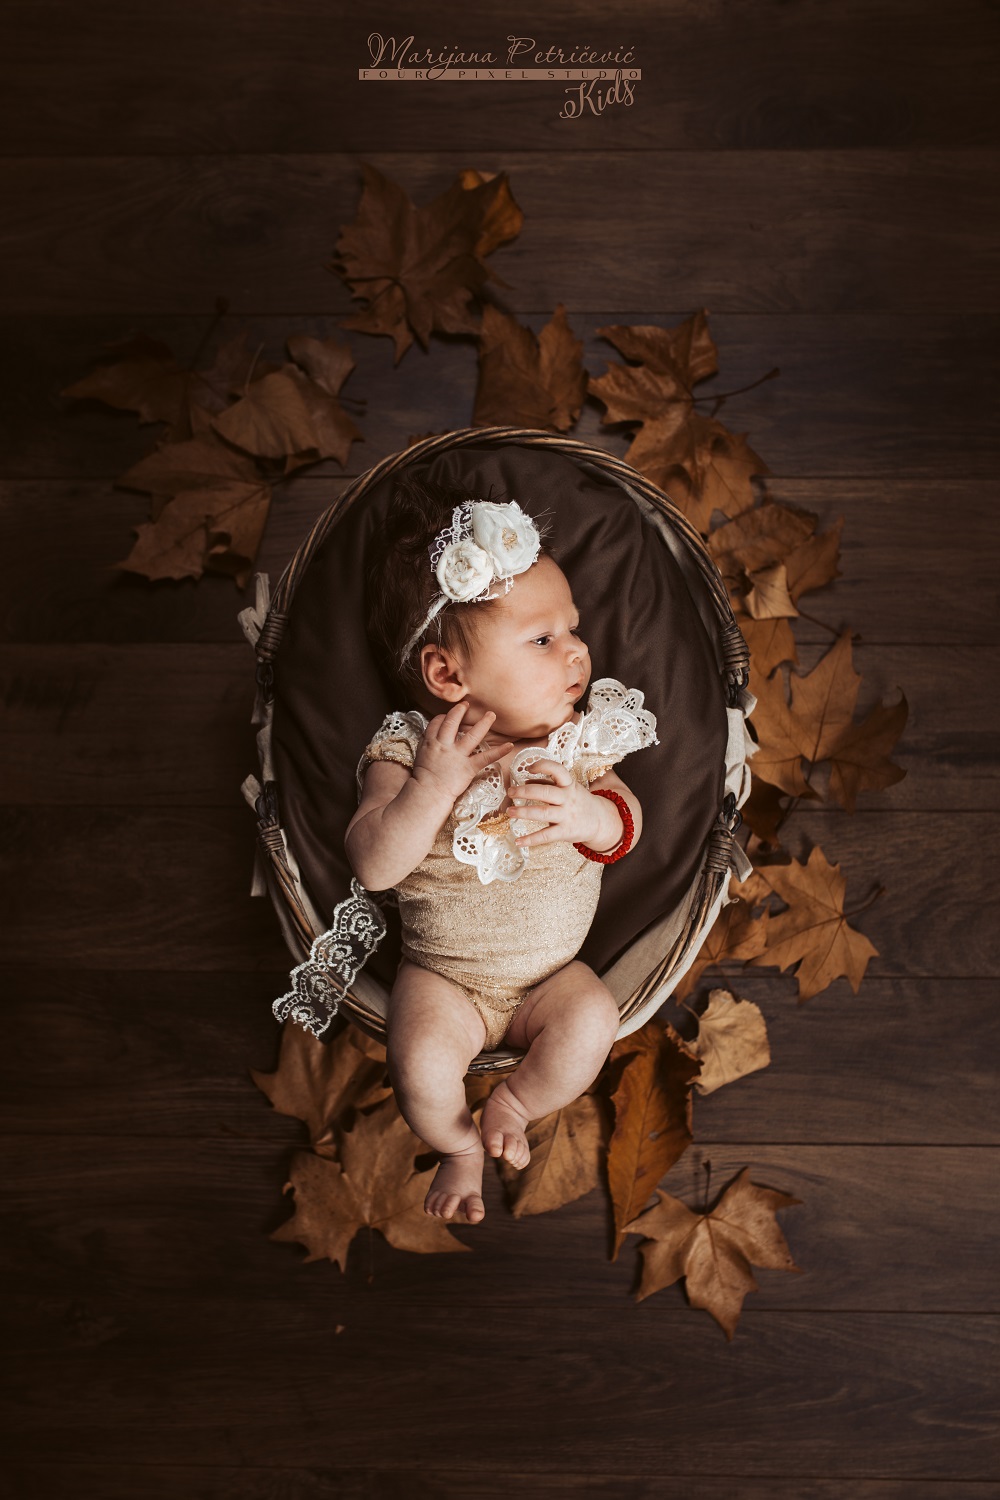 Porodilište: Jedna beba